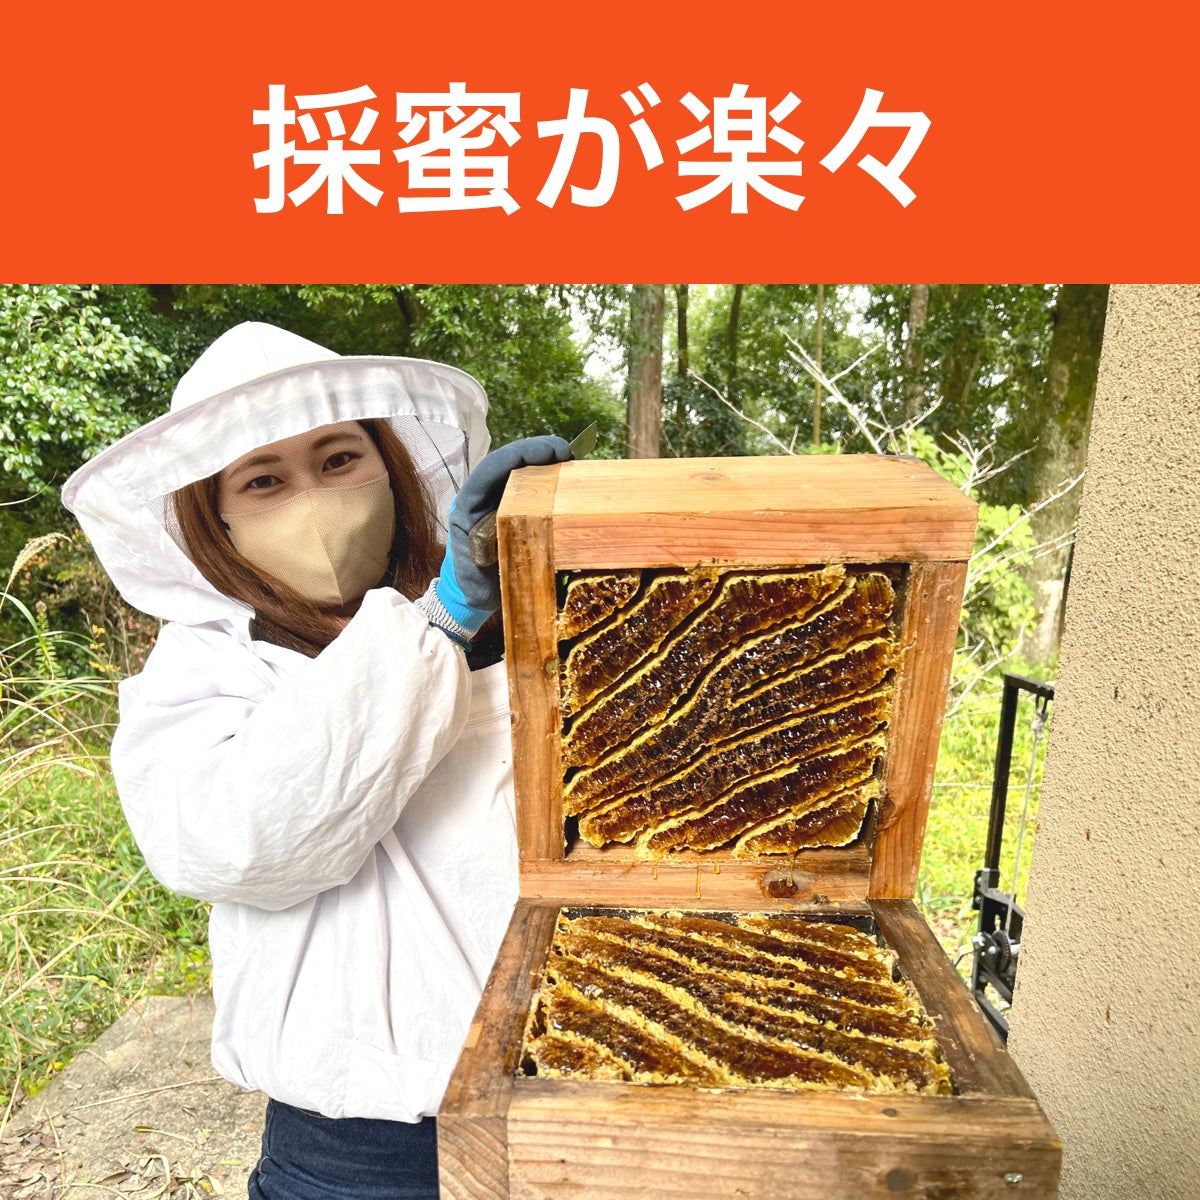 ニホンミツバチ 重箱式5段巣箱+引出し付き台 - 虫かご・飼育ケース